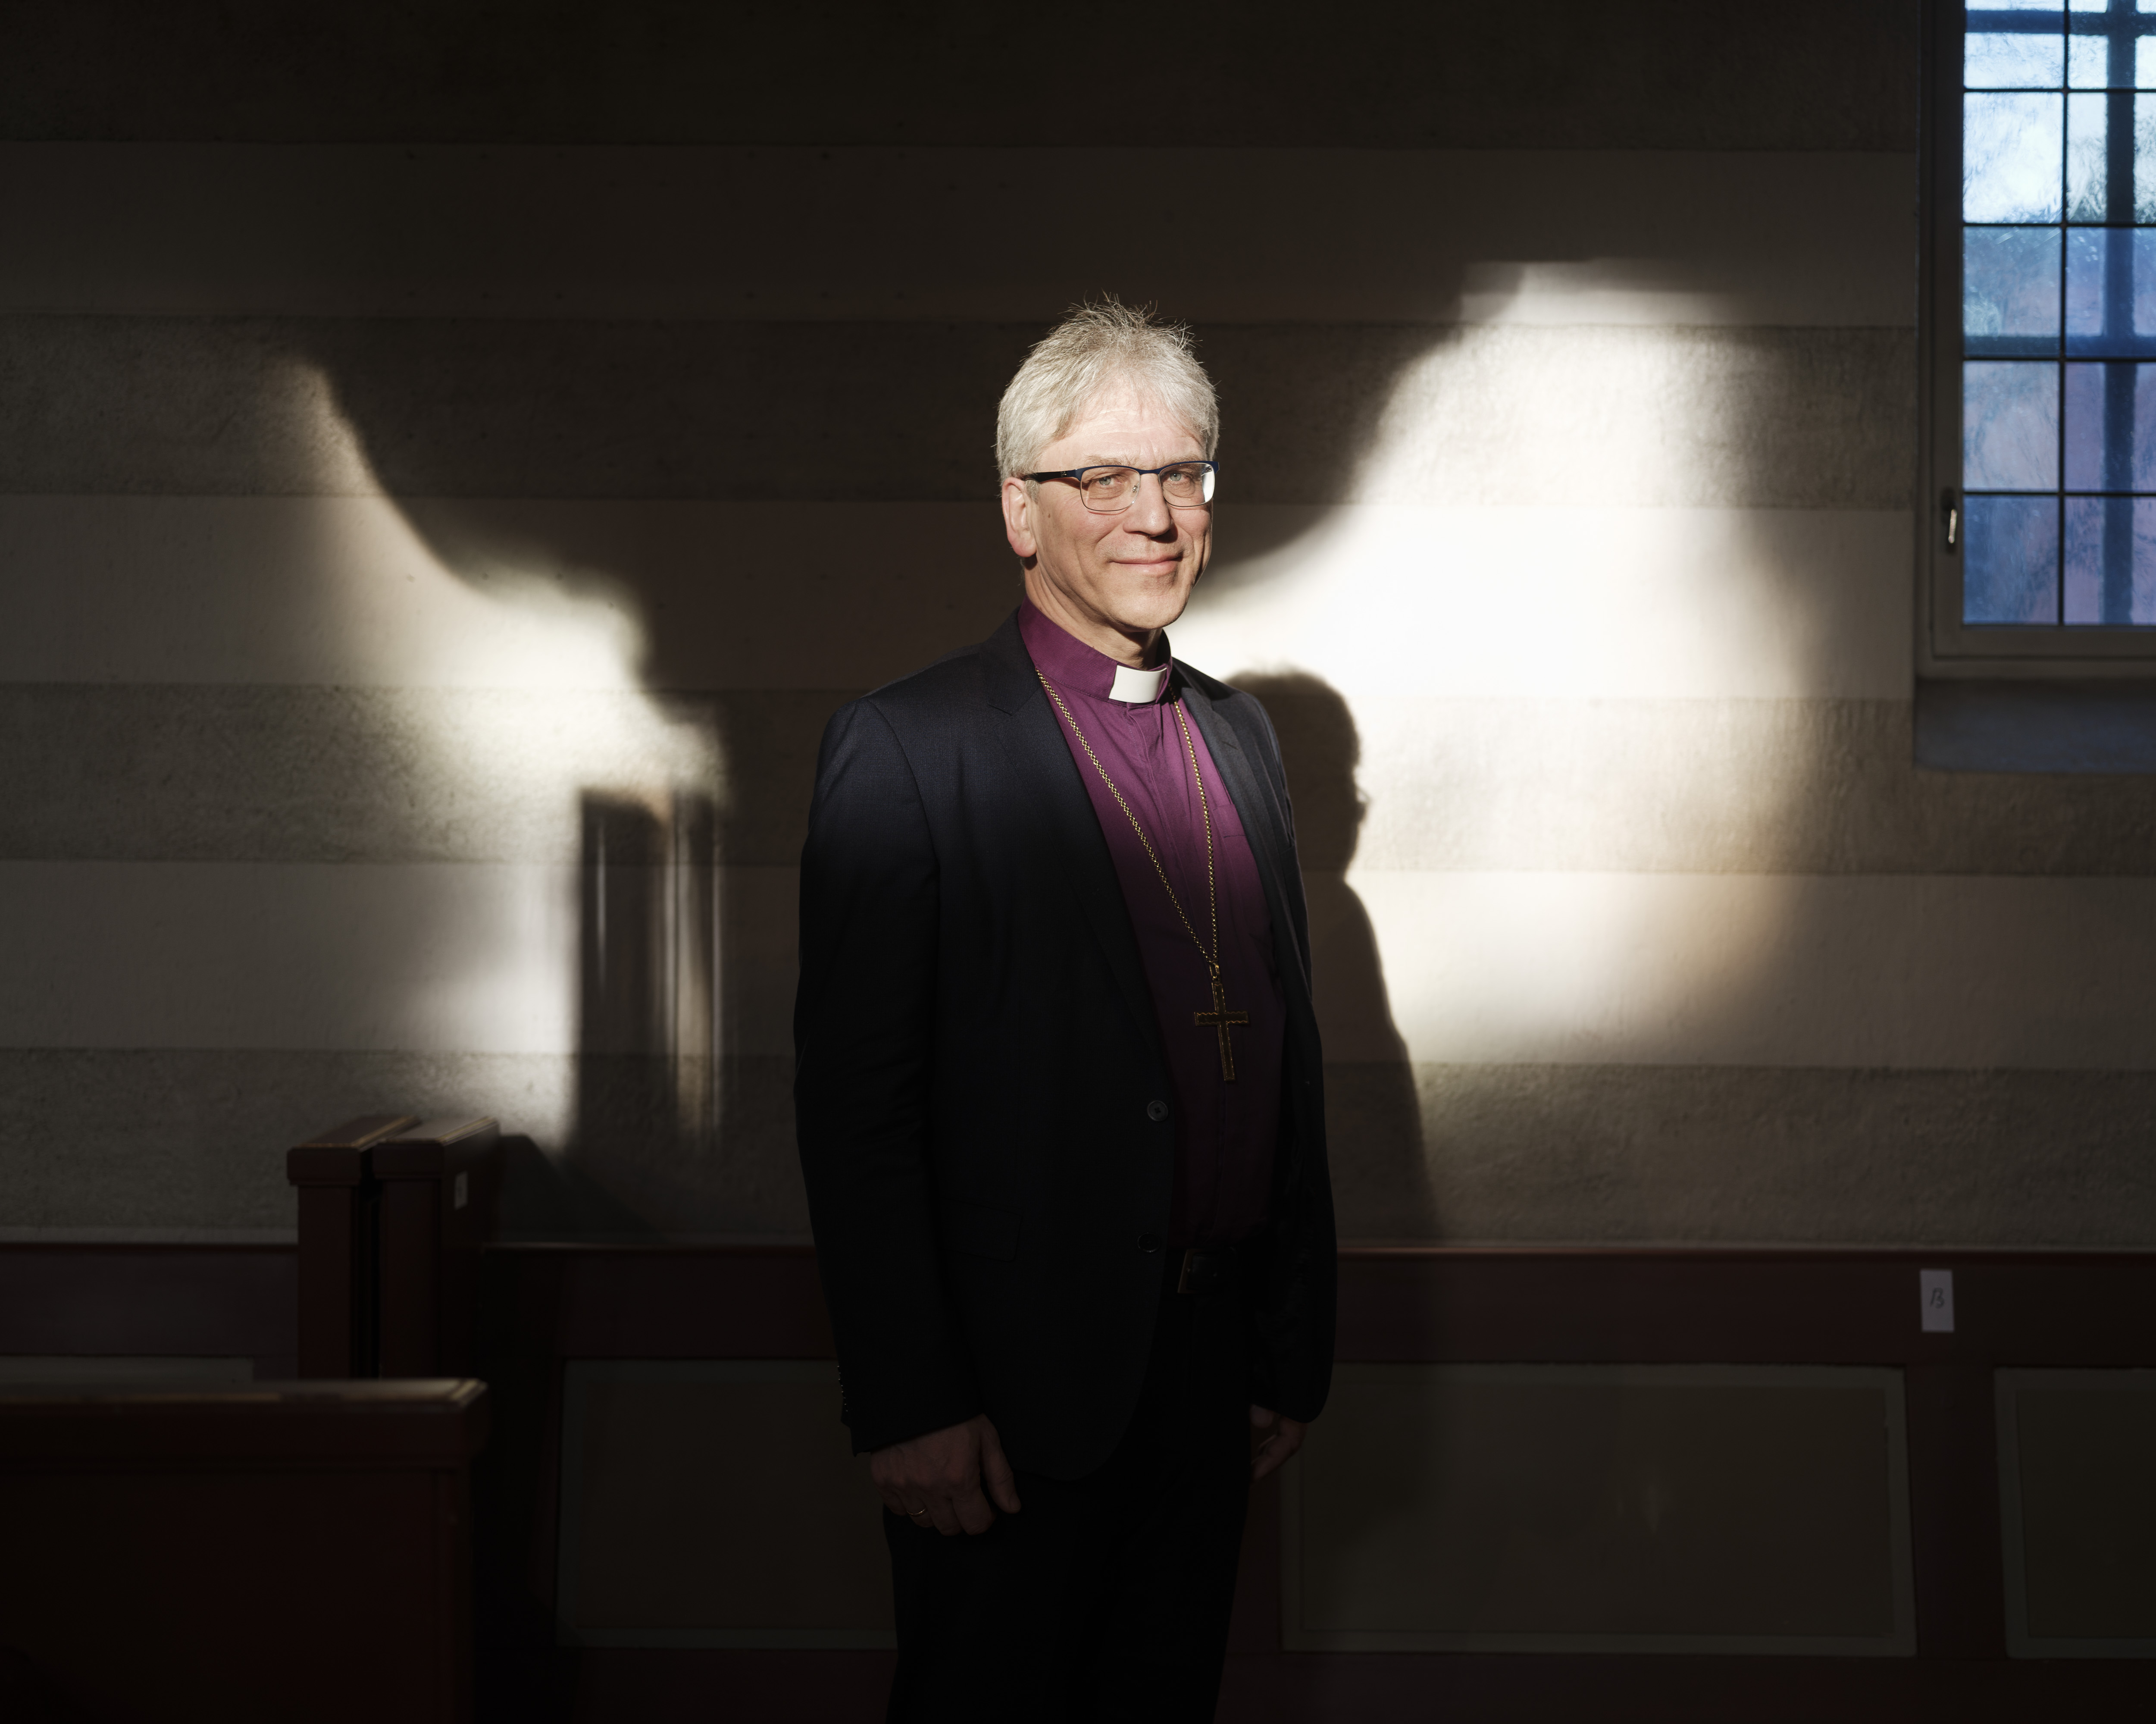 Kari Mangrud Alvsvåg presenteres som ny biskop i Borg. Fredrikstad domkirke.

Preses Olav Fykse Tveit